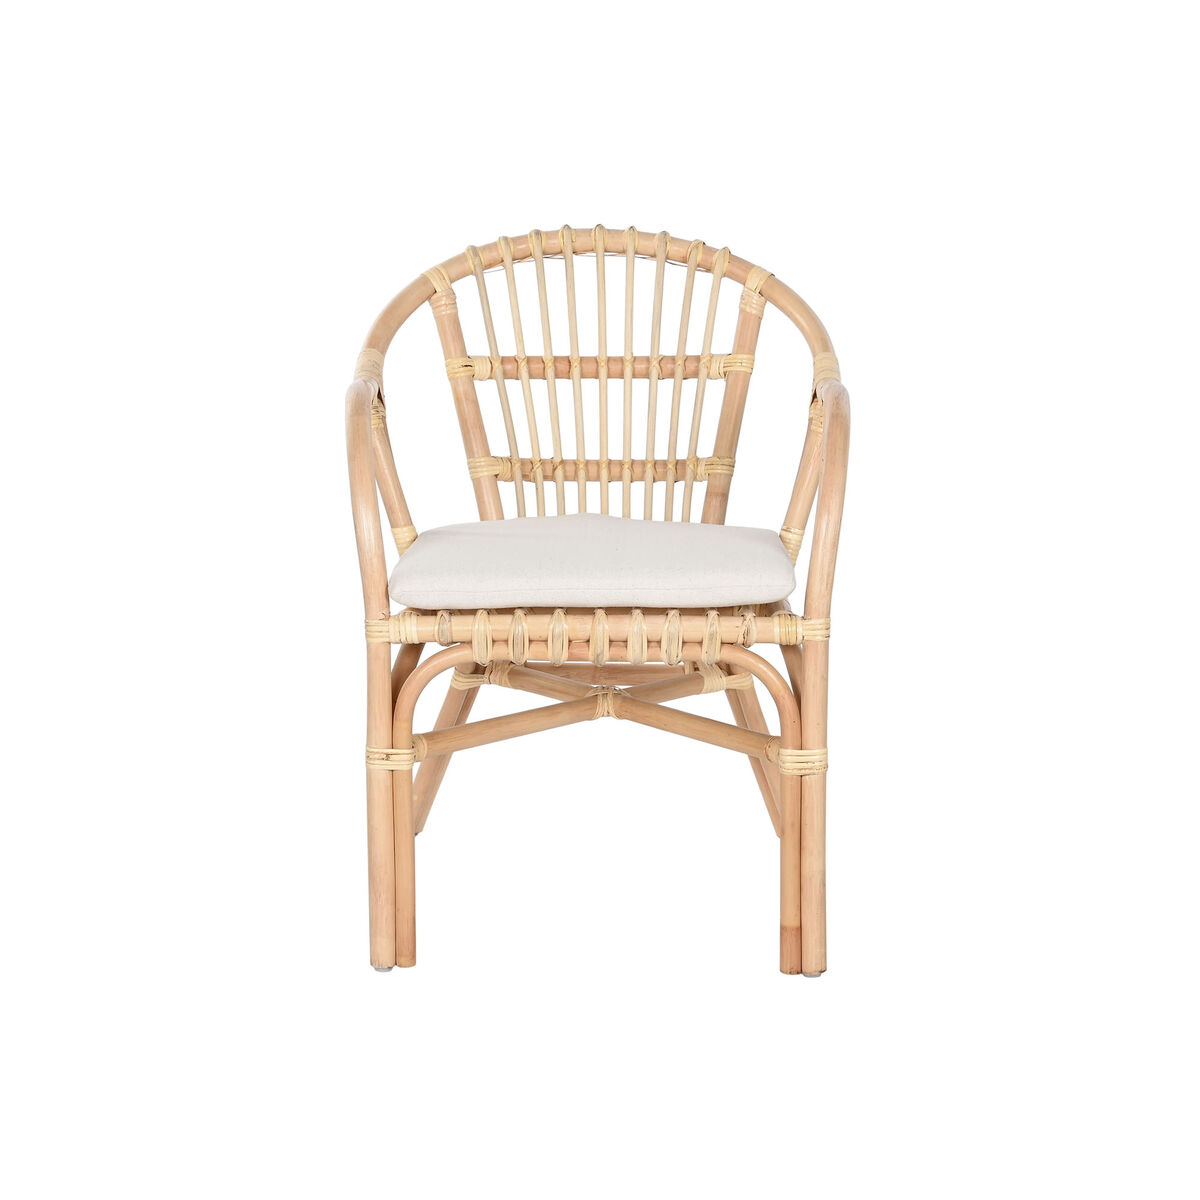 Σετ Τραπέζι με 2 Καρέκλες Home ESPRIT Λευκό Φυσικό 50 x 50 x 50 cm